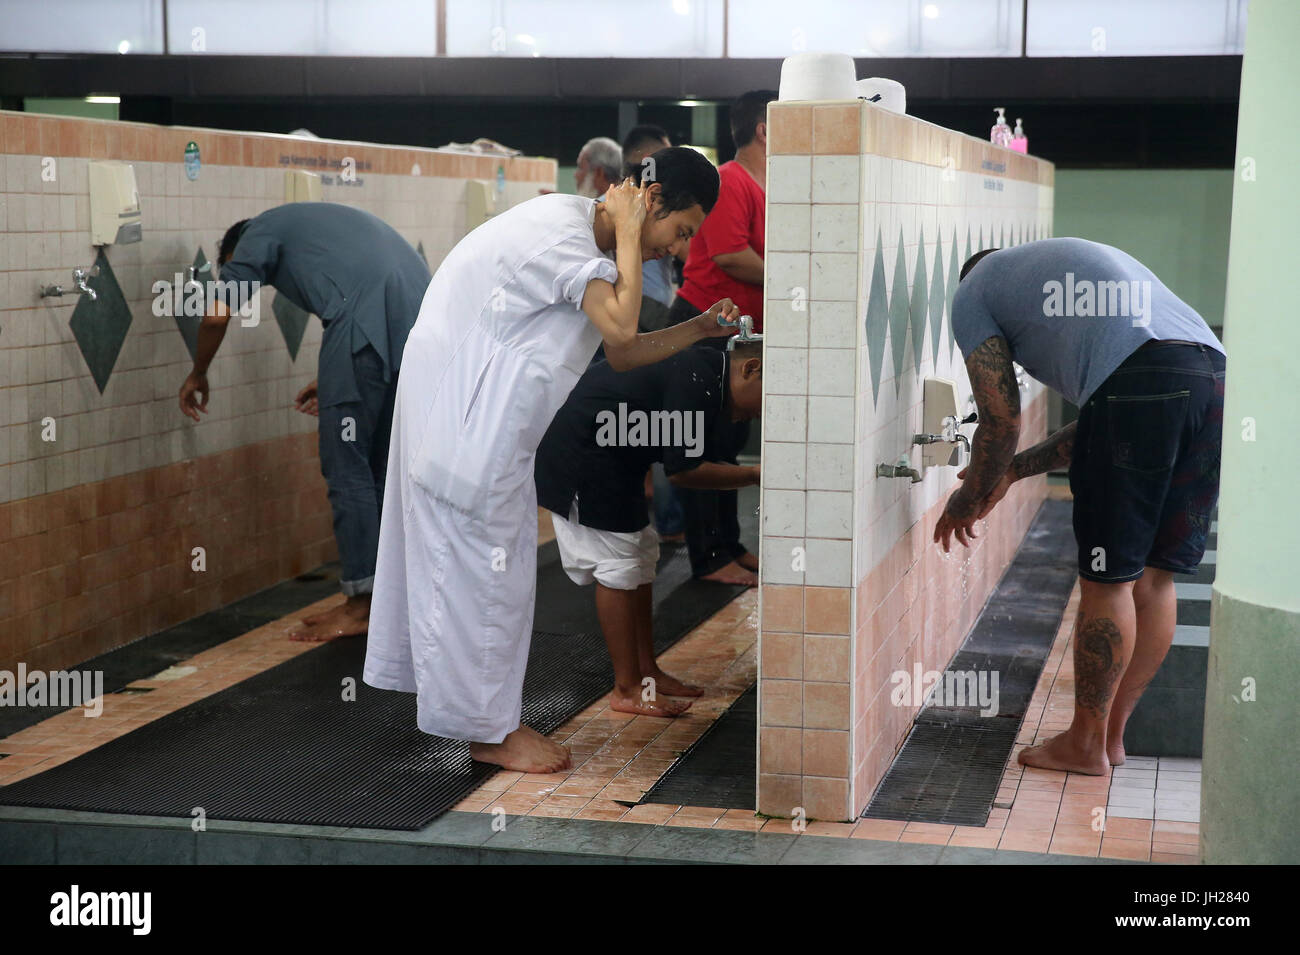 Masjid Jamae befindet sich eine der ältesten Moscheen in Singapur in Chinatown.  Moslems durchführen Waschung vor dem Salat.  Singapur. Stockfoto